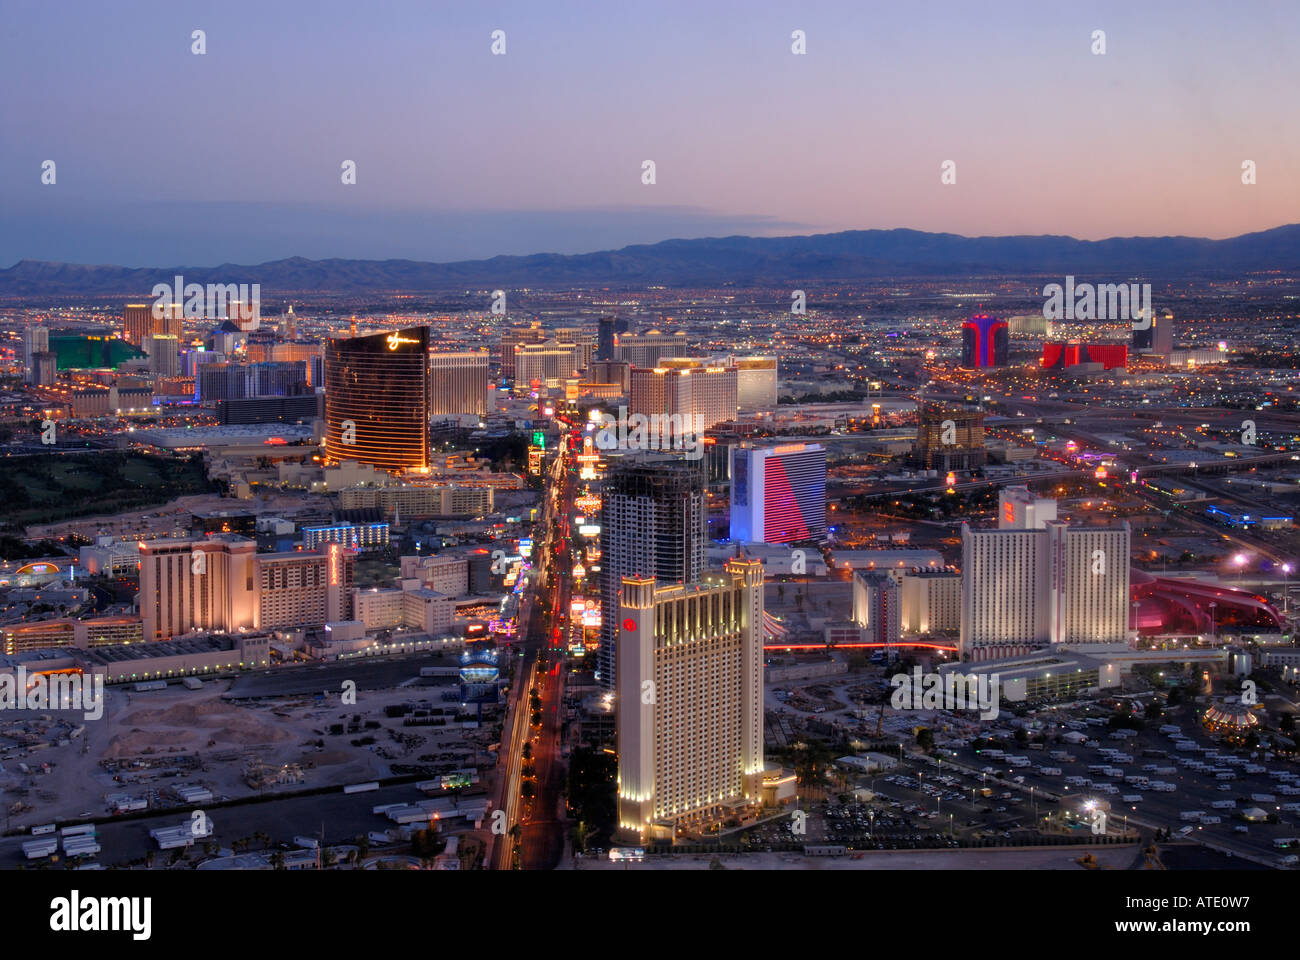 Aerial view of Las Vegas Boulevard Las Vegas Nevada USA Stock Photo